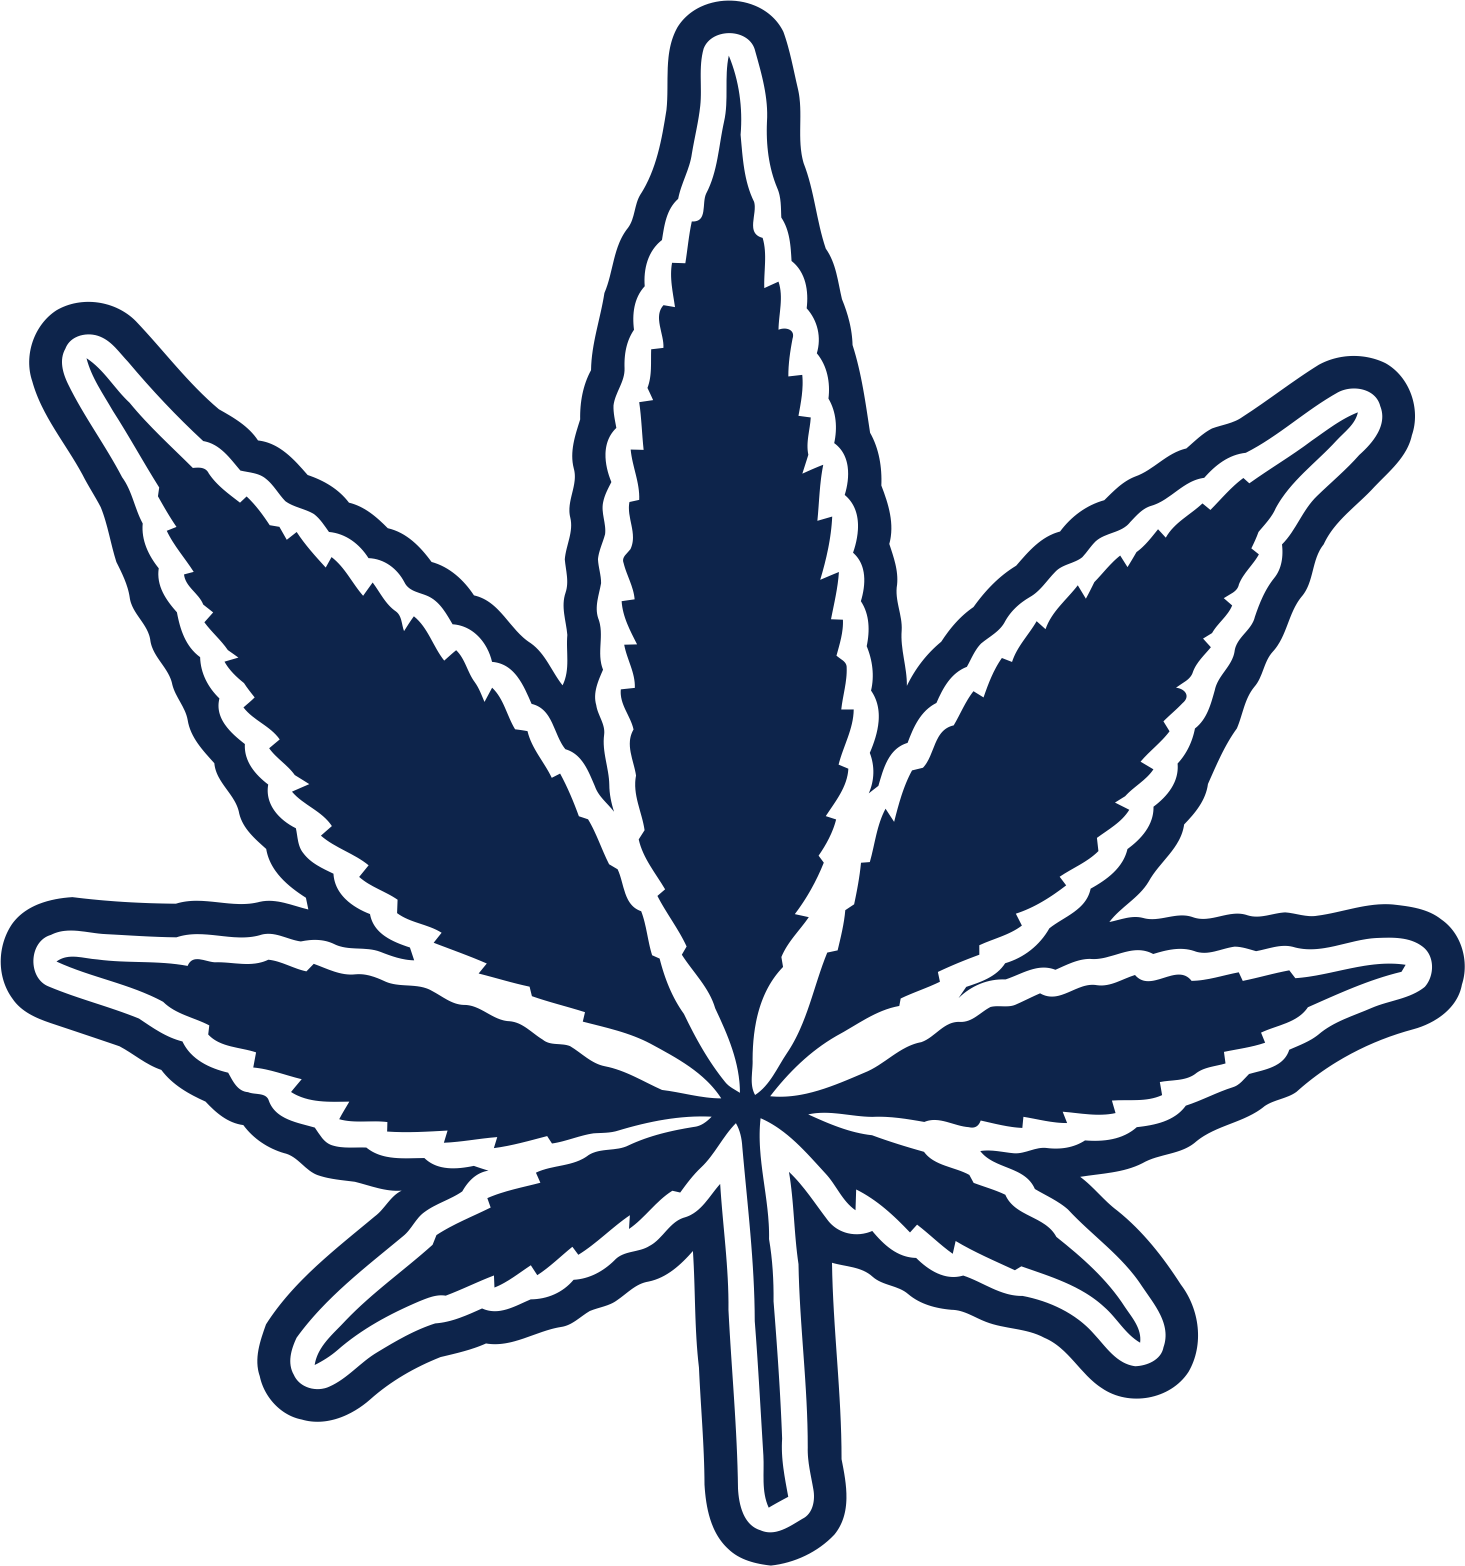 Dallas Cowboys Smoking Weed Logo iron on transfers